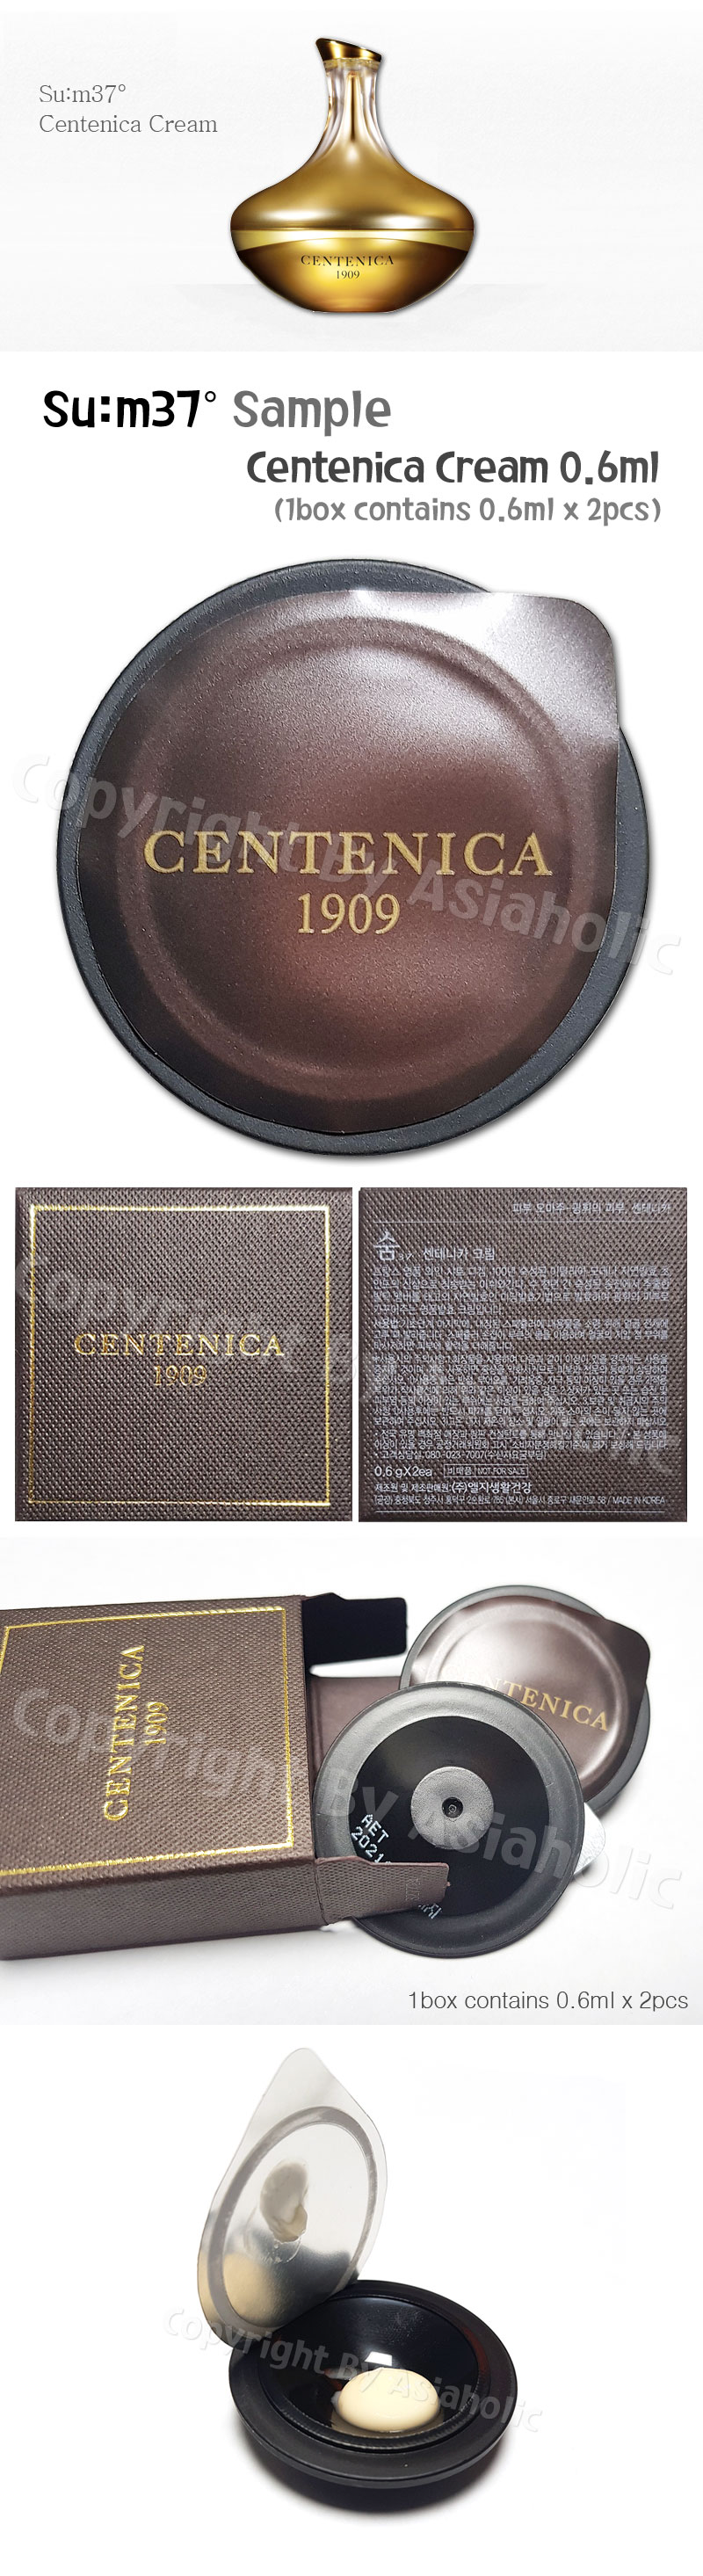 SU:M37 Centenica Cream 0.6ml x 14pcs (7Box) Premium Sample Sum37 Newest Version